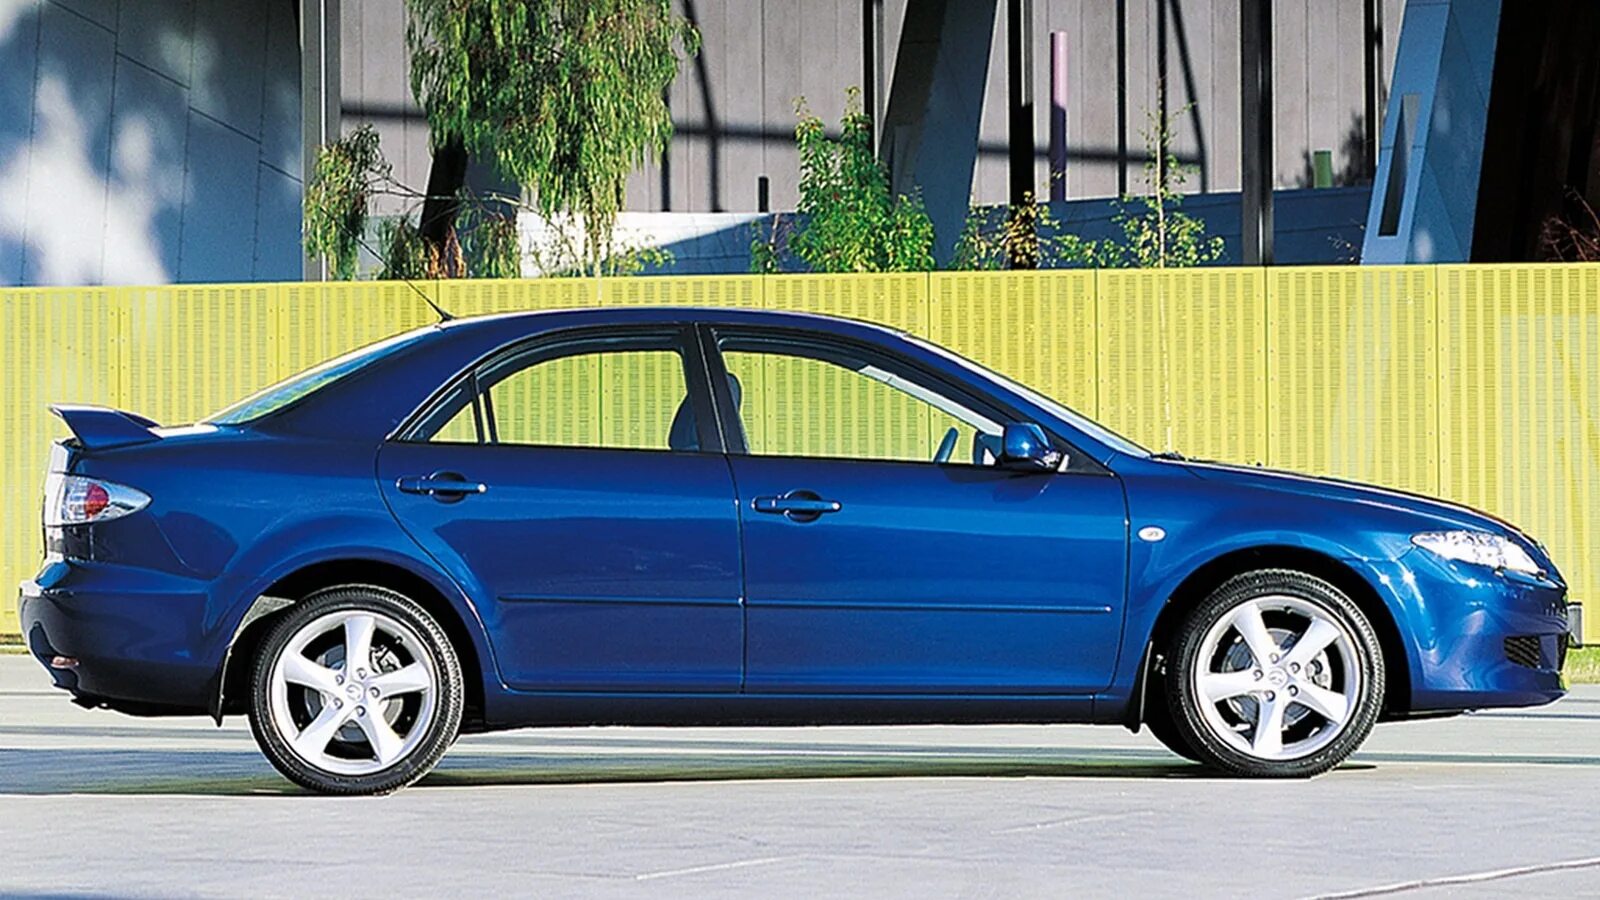 Мазда 6 1 gg. Mazda 6 gg. Mazda 6 2002. Мазда 6 седан 2002. Mazda 6 gg седан.